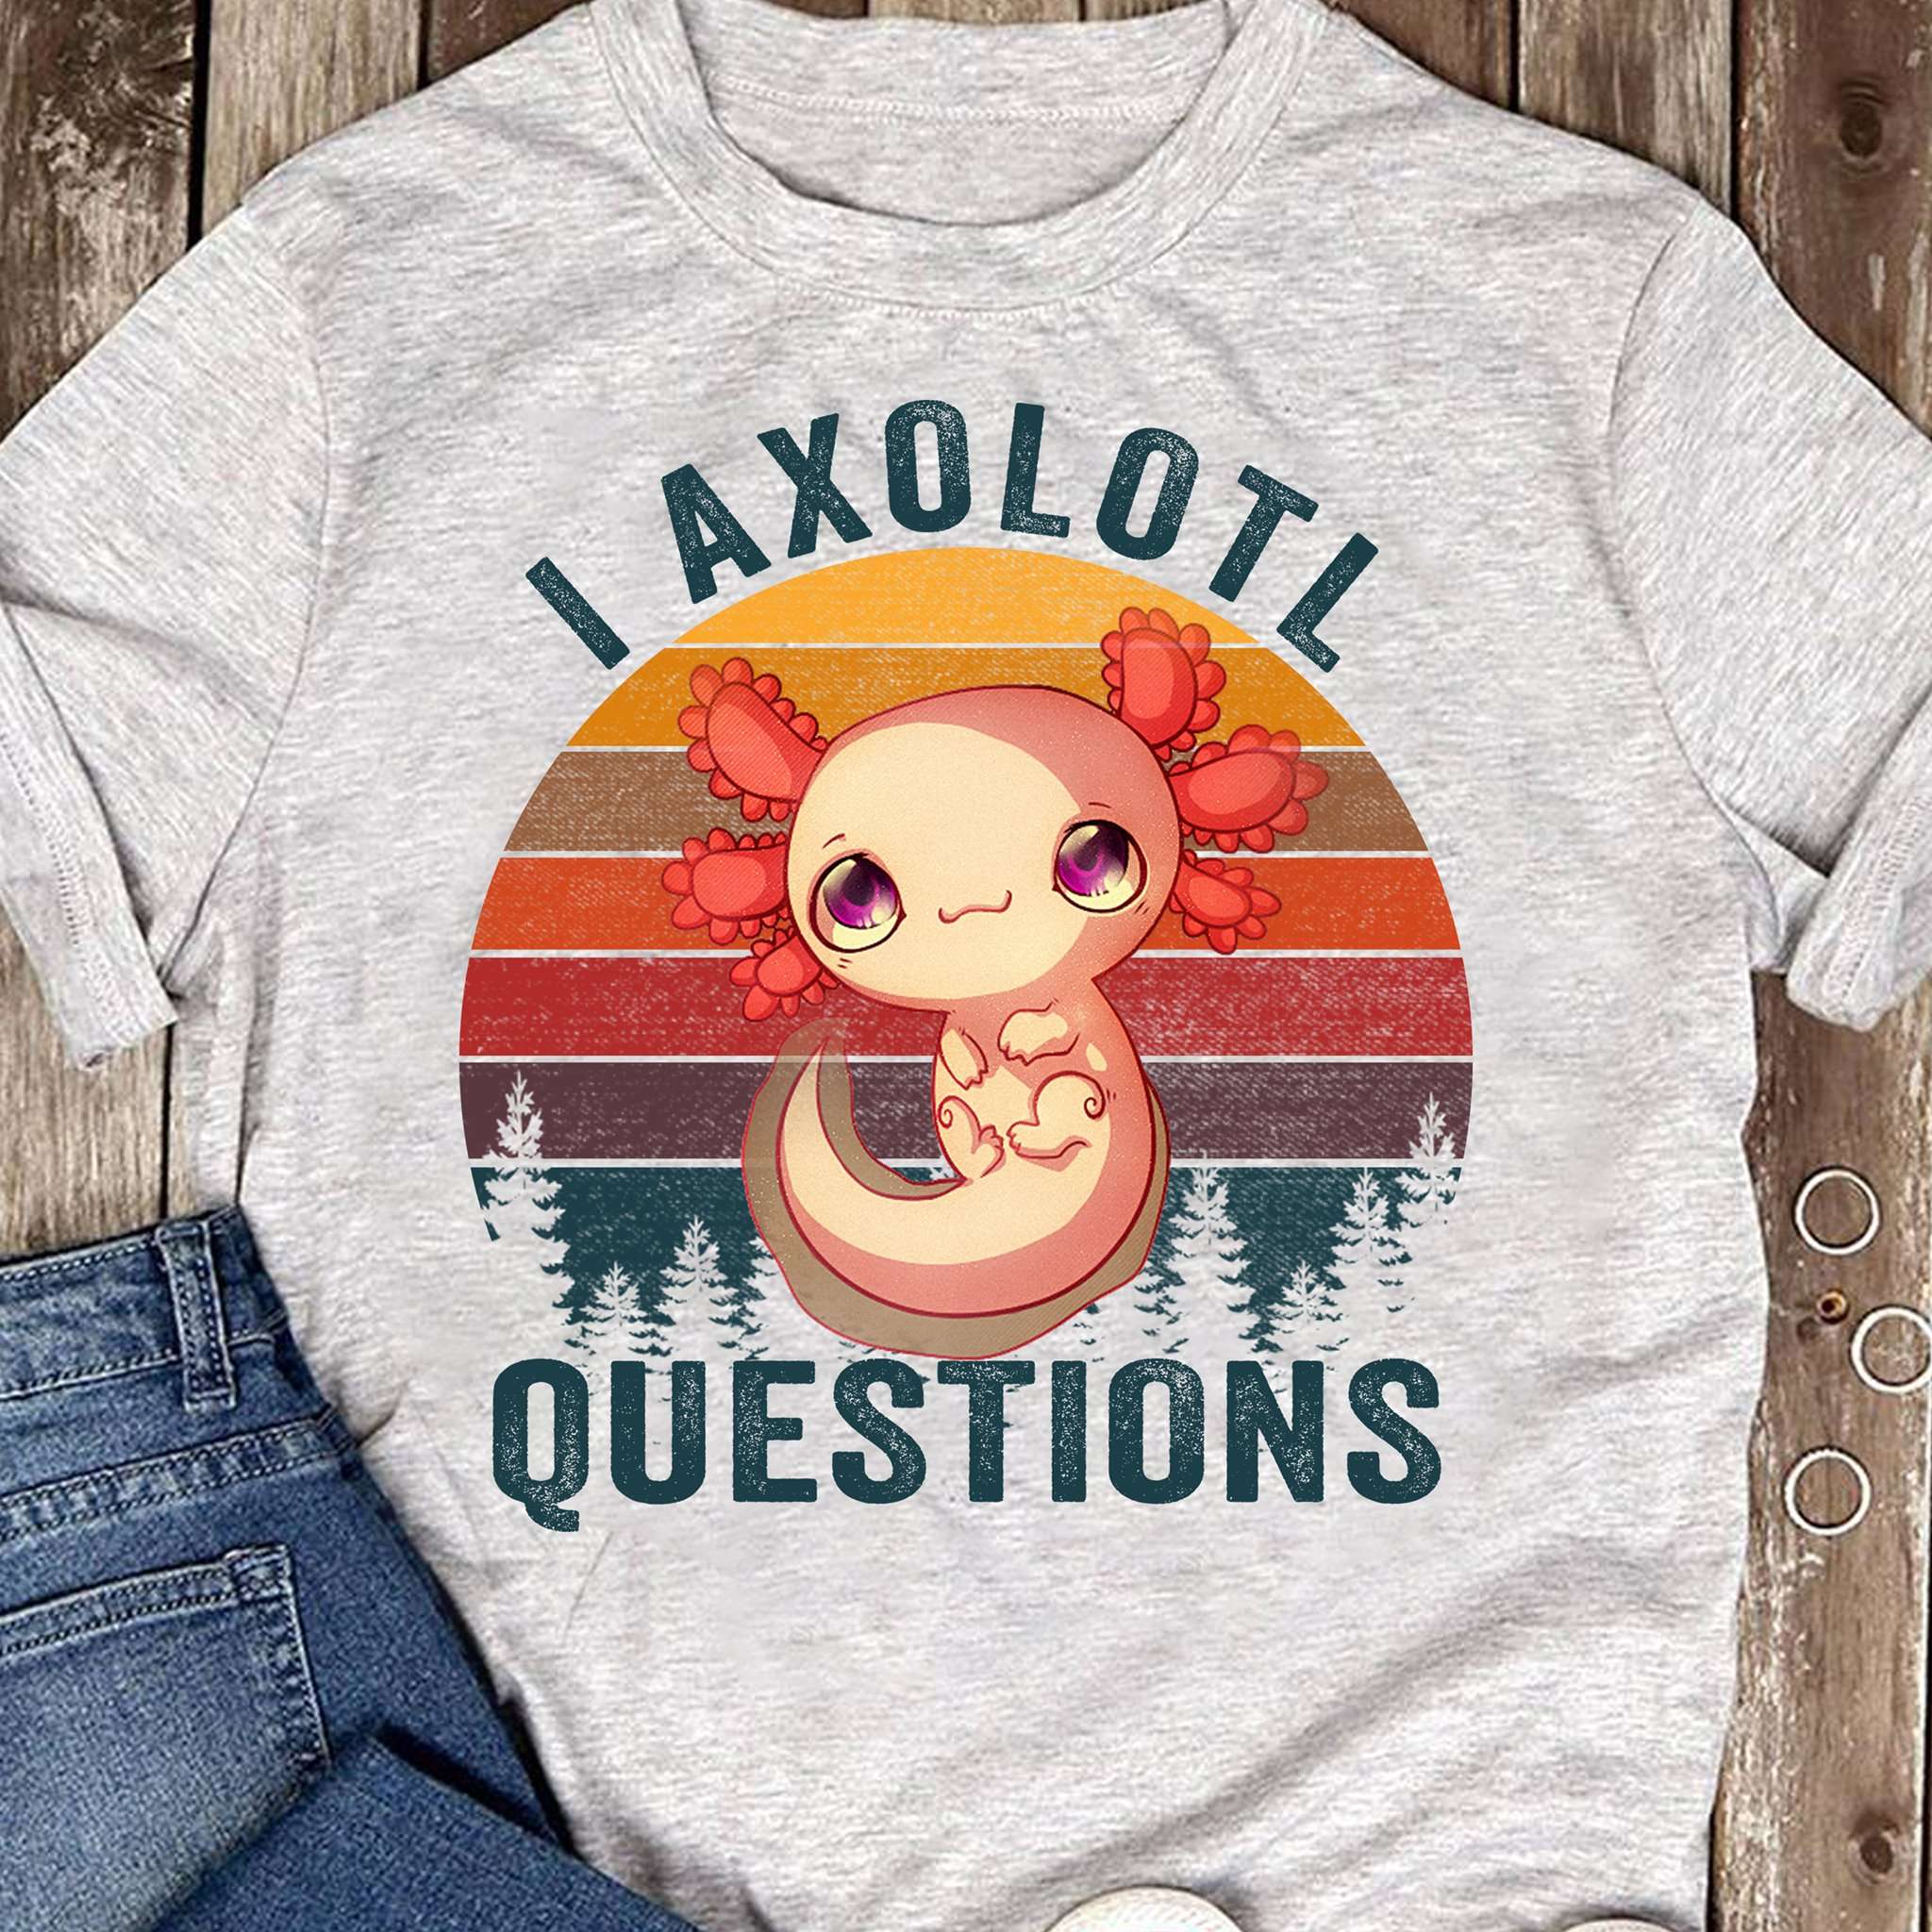 Little Axolotl, Mexico Axolotl - I axolotl questions